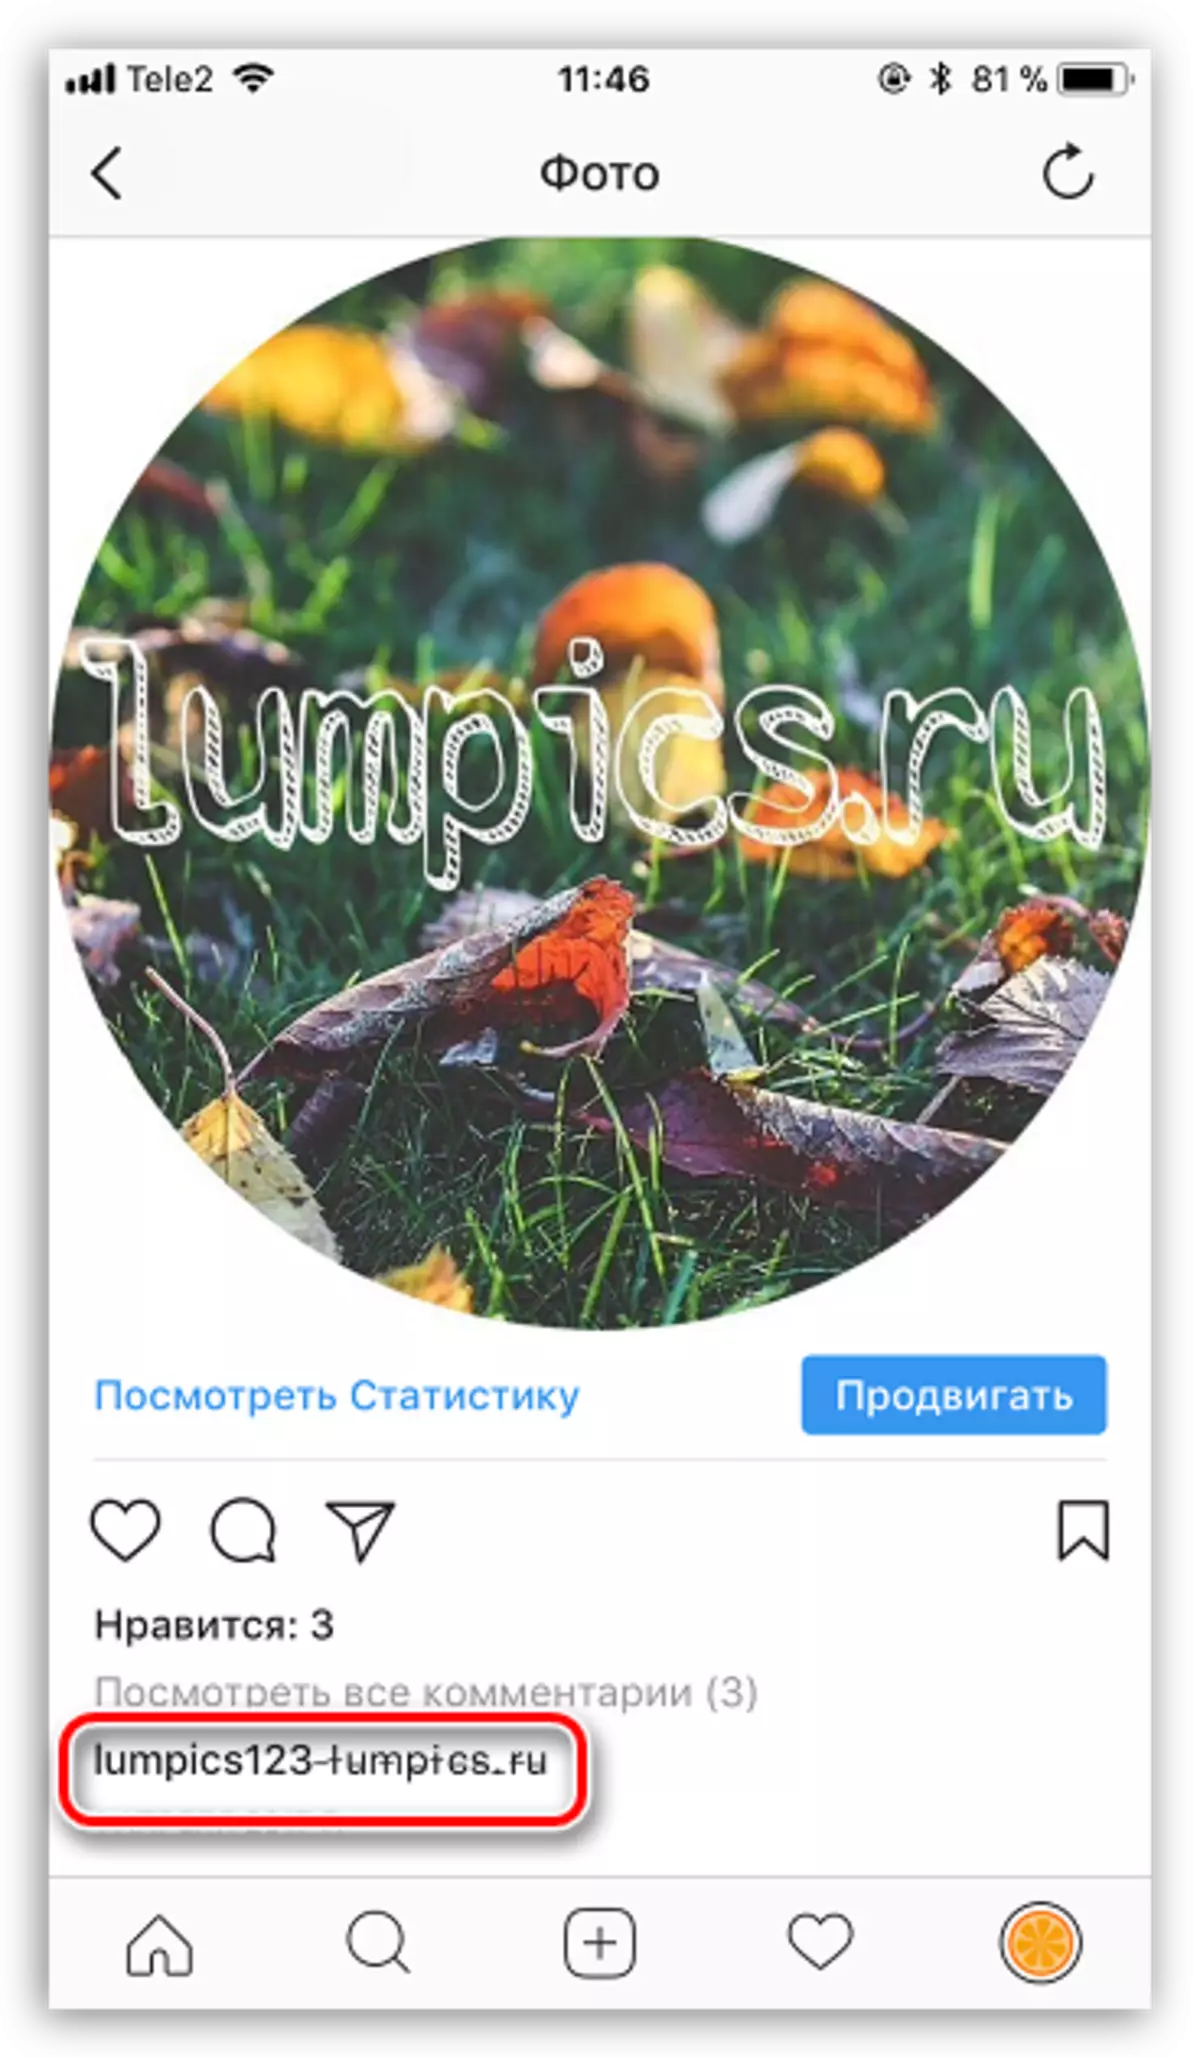 Testo sollecitato in Instagram Appendia